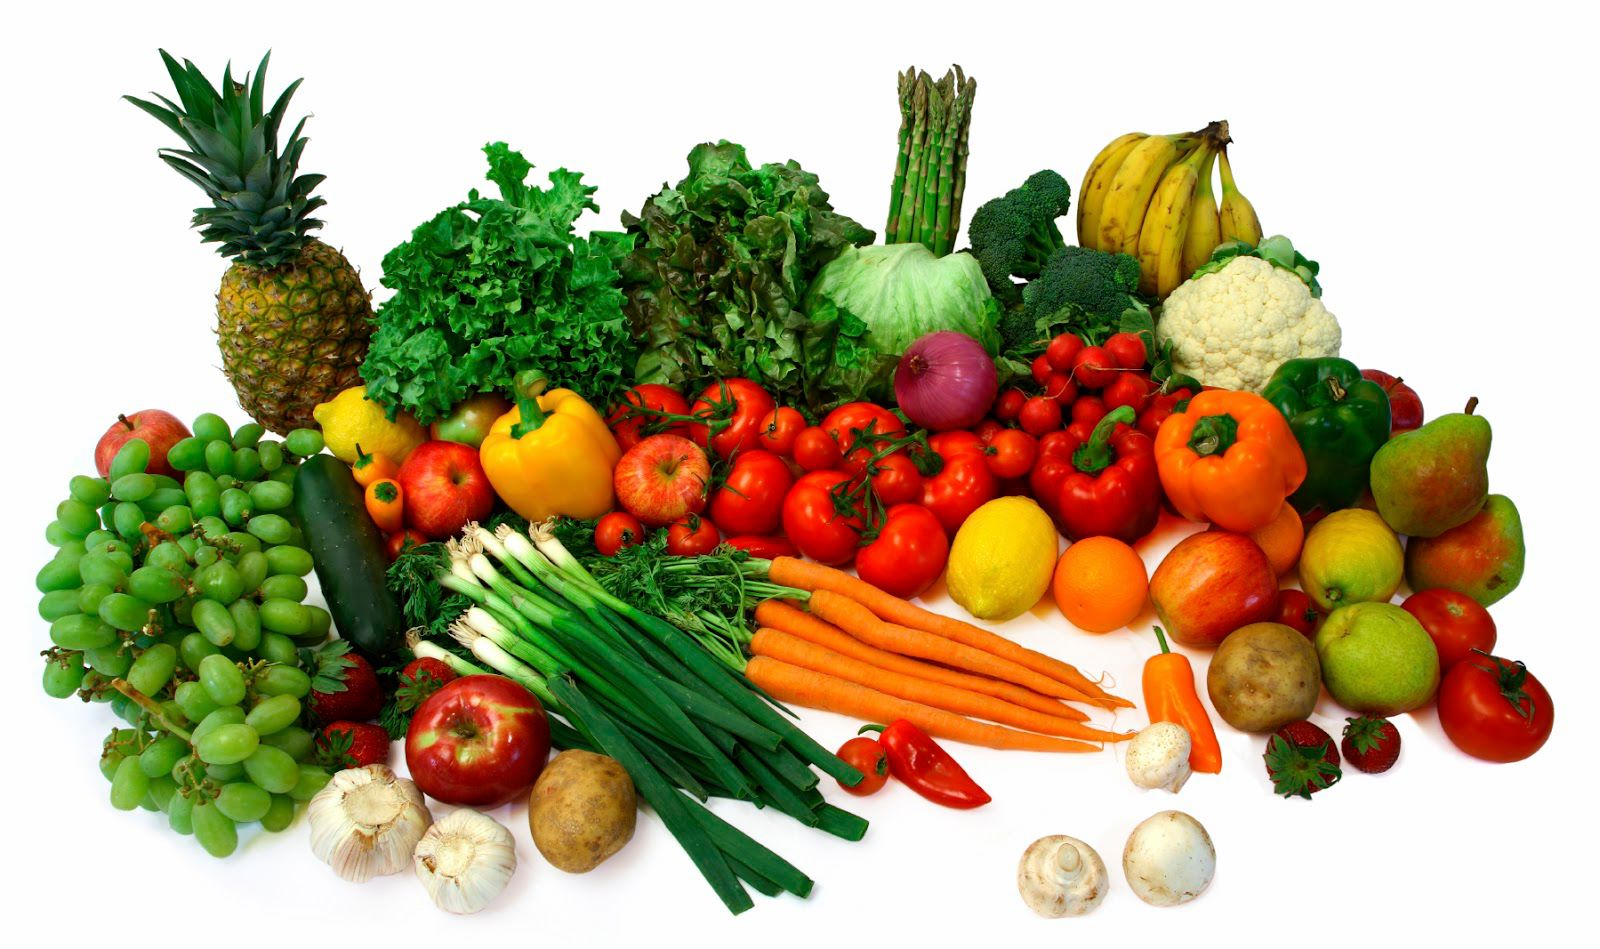 manfaat makan sayur sayuran  buah buahan dunia kesehatan